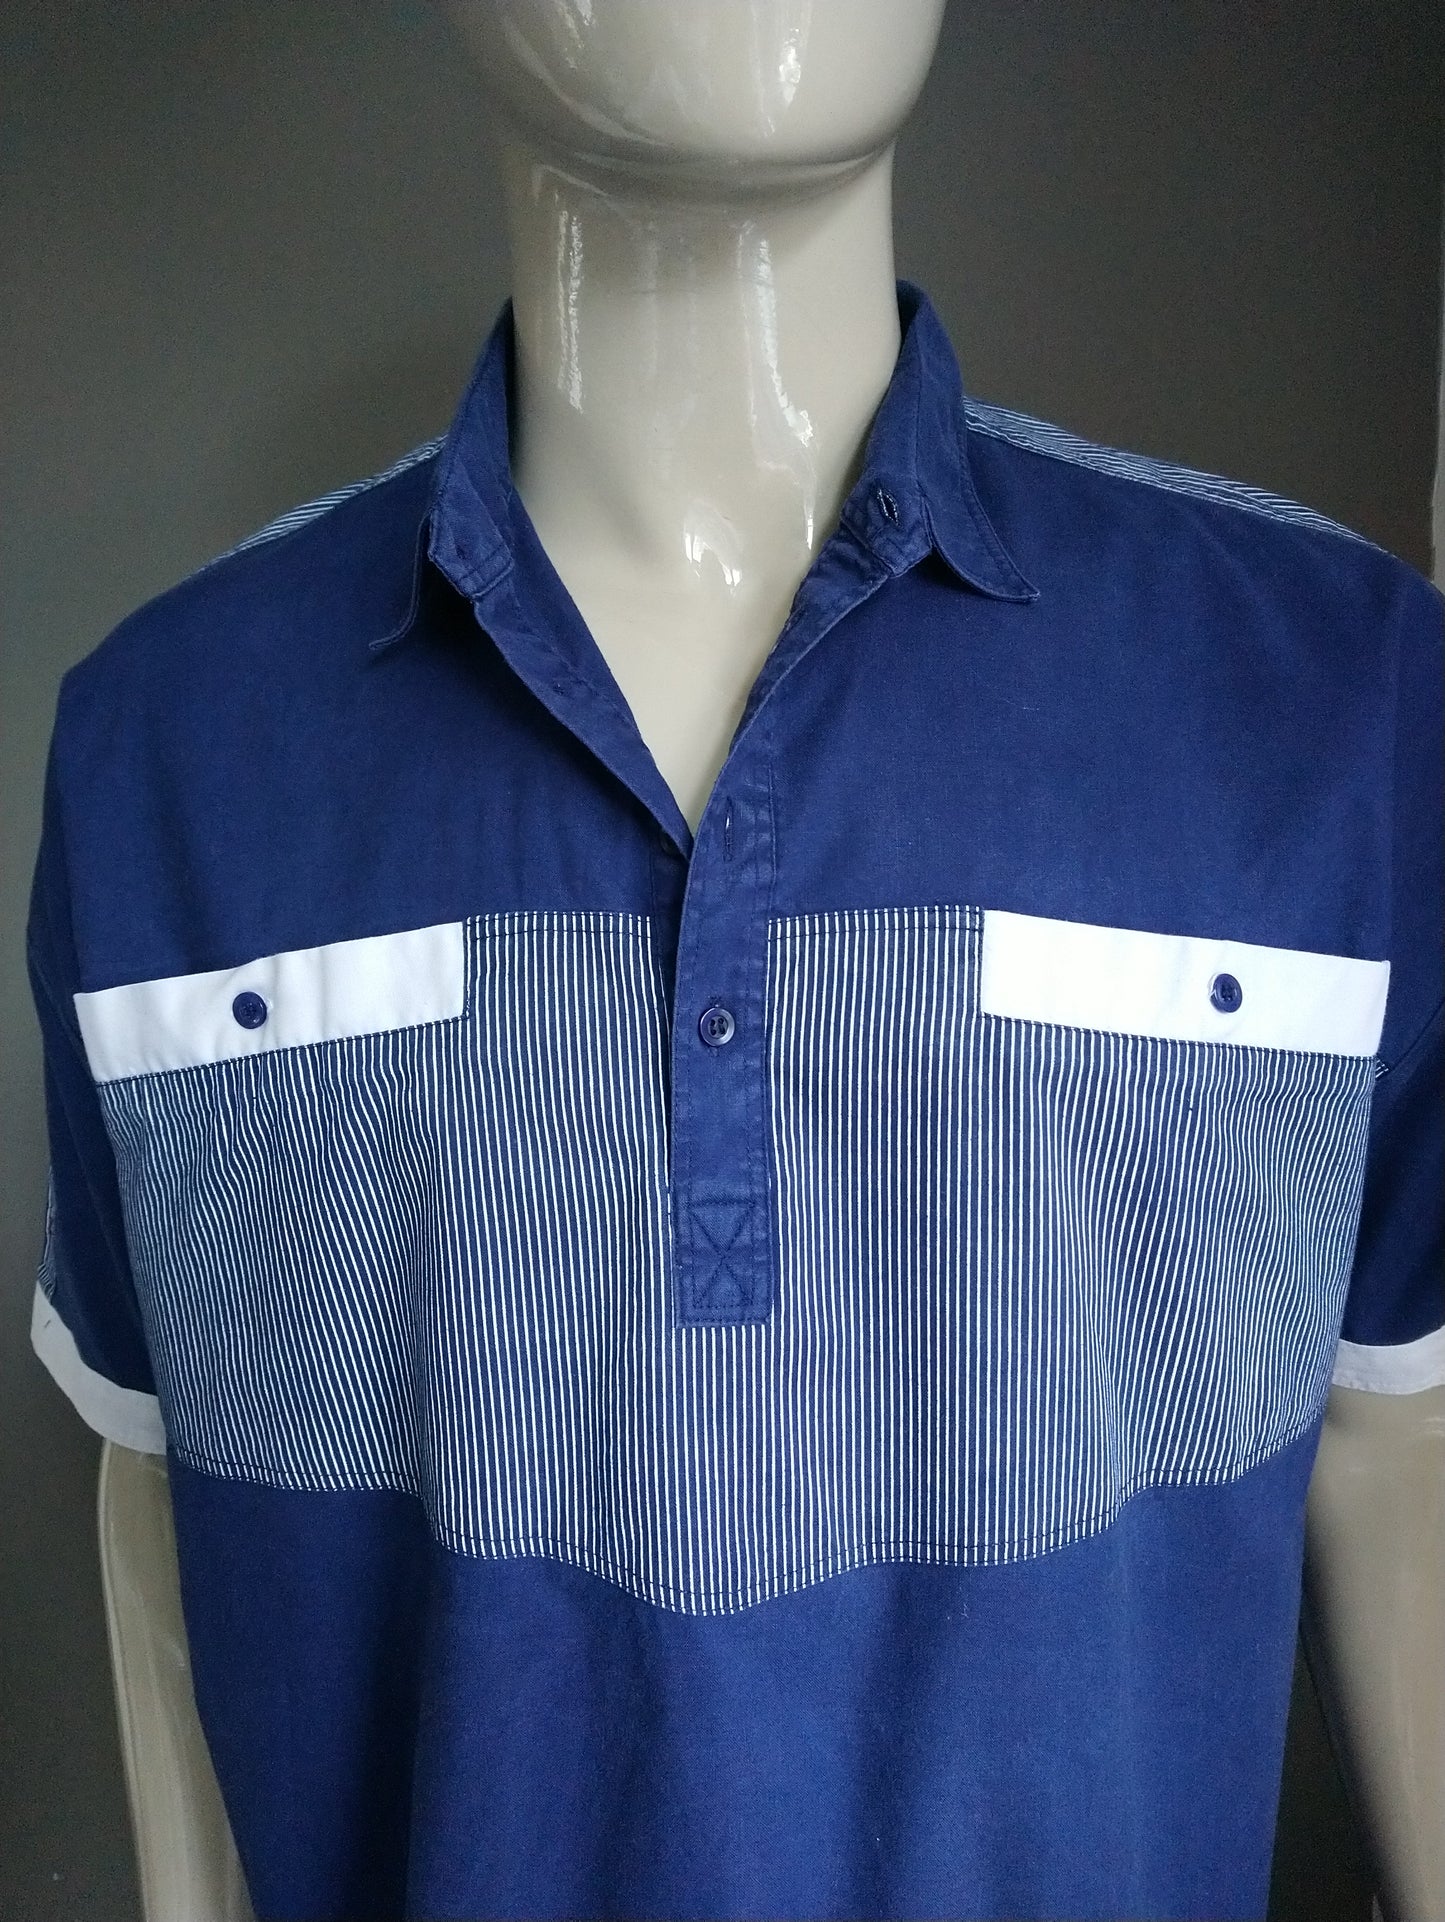 Vintage Polo mit Gummiband. Blau weiß gefärbt. Größe xl / xxl-2xl.